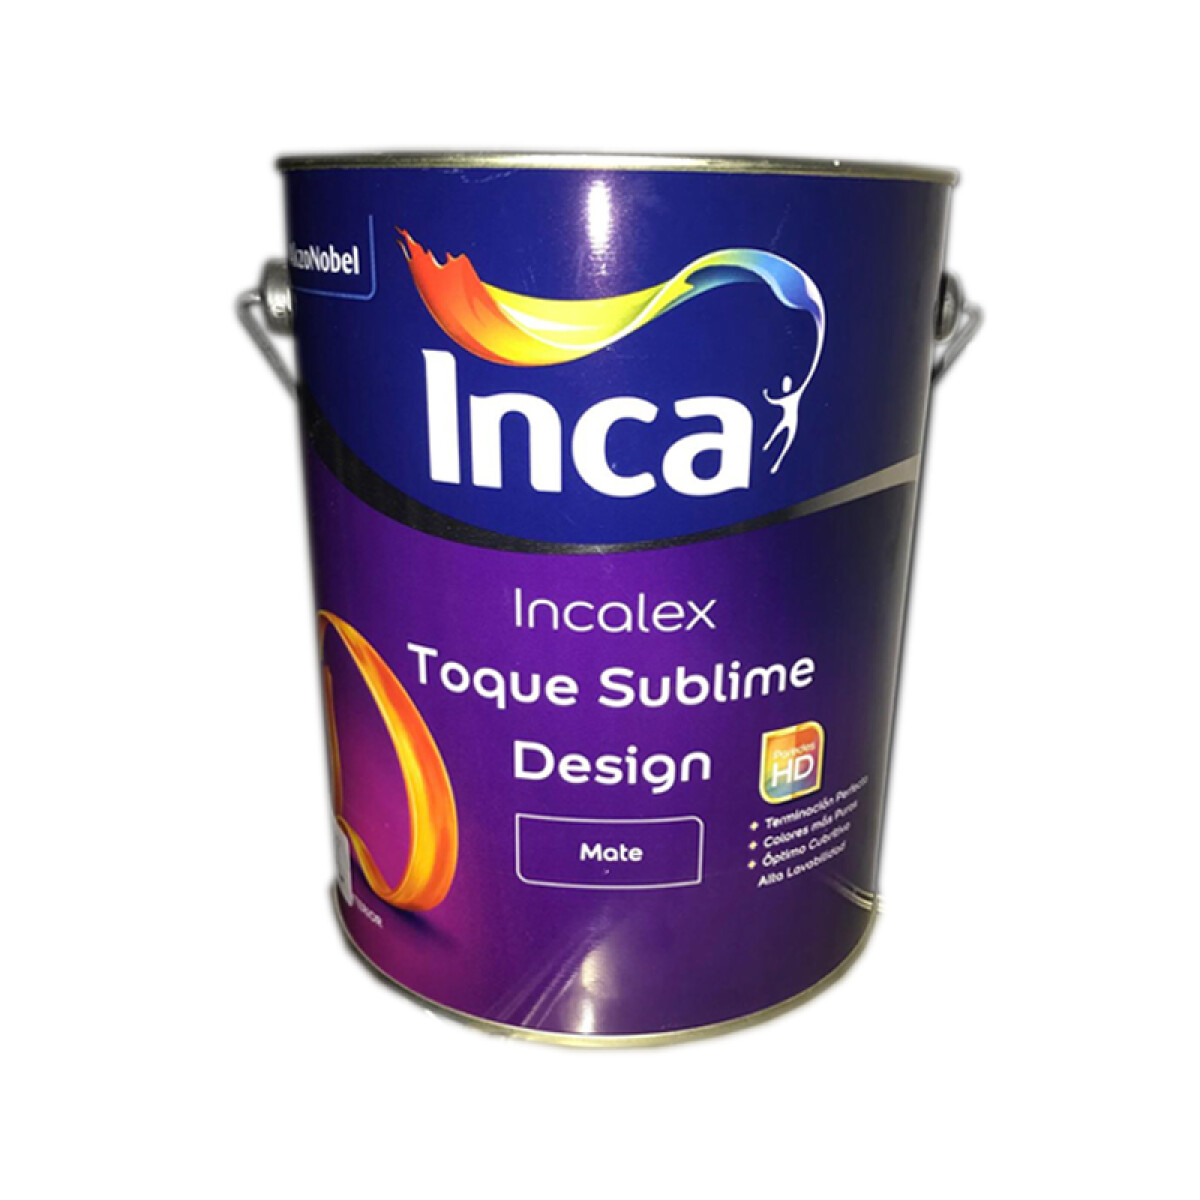 INCALEX TOQUE SUBLIME DESING MATE 4L INCA 